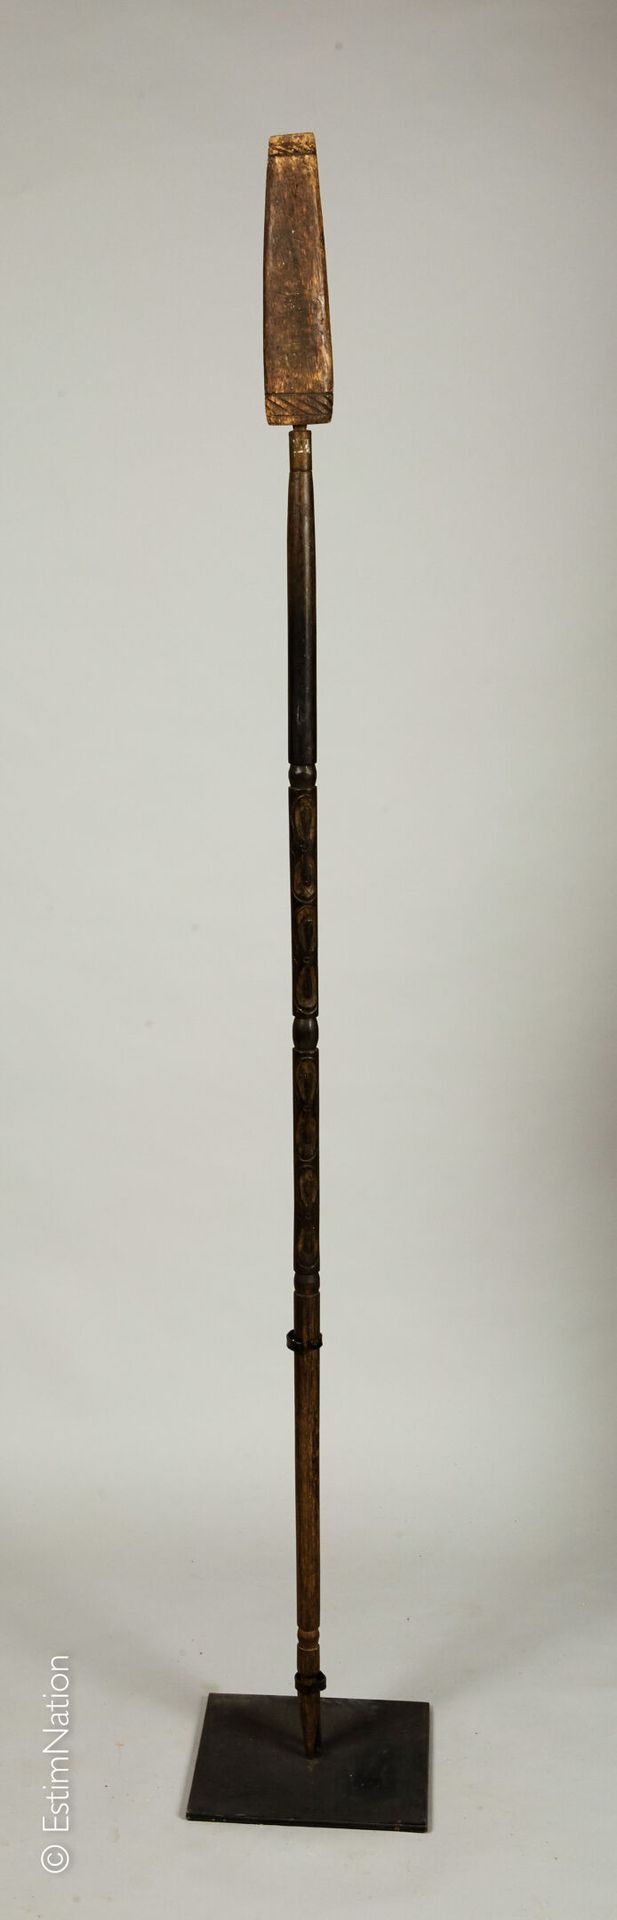 BORNEO - Dayak BORNEO - DAYAK

Speer aus exotischem Holz und Scheide mit geschni&hellip;